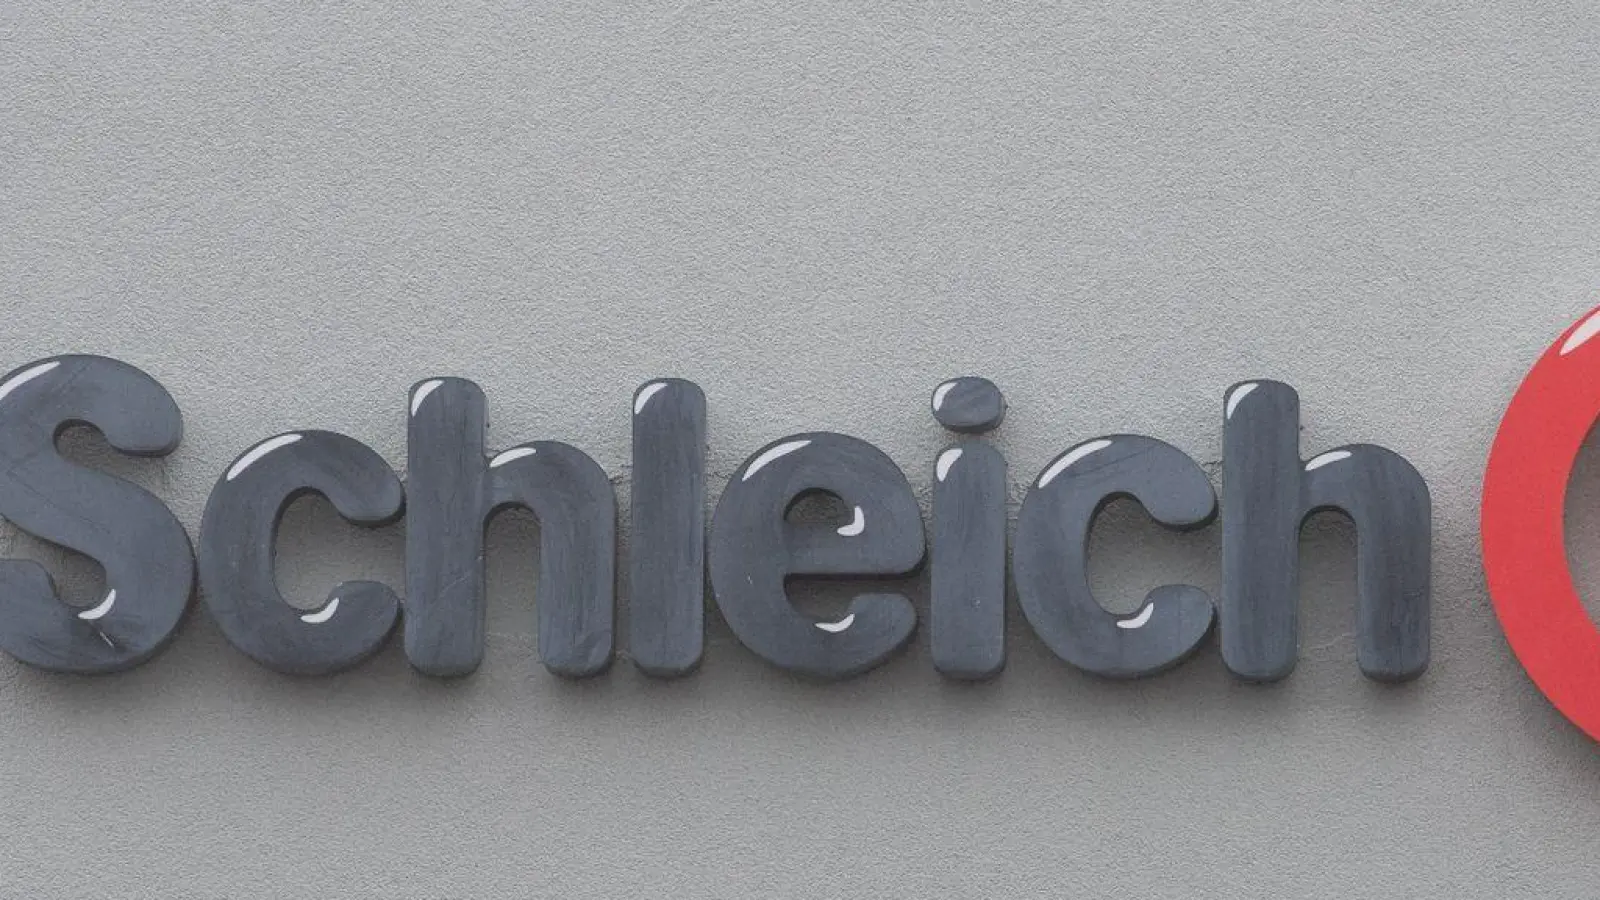 Am Firmensitz von Schleich in Herlikofen befindet sich der Fimenschriftzug mit dem Logo. (Foto: Stefan Puchner/dpa/Archivbild)